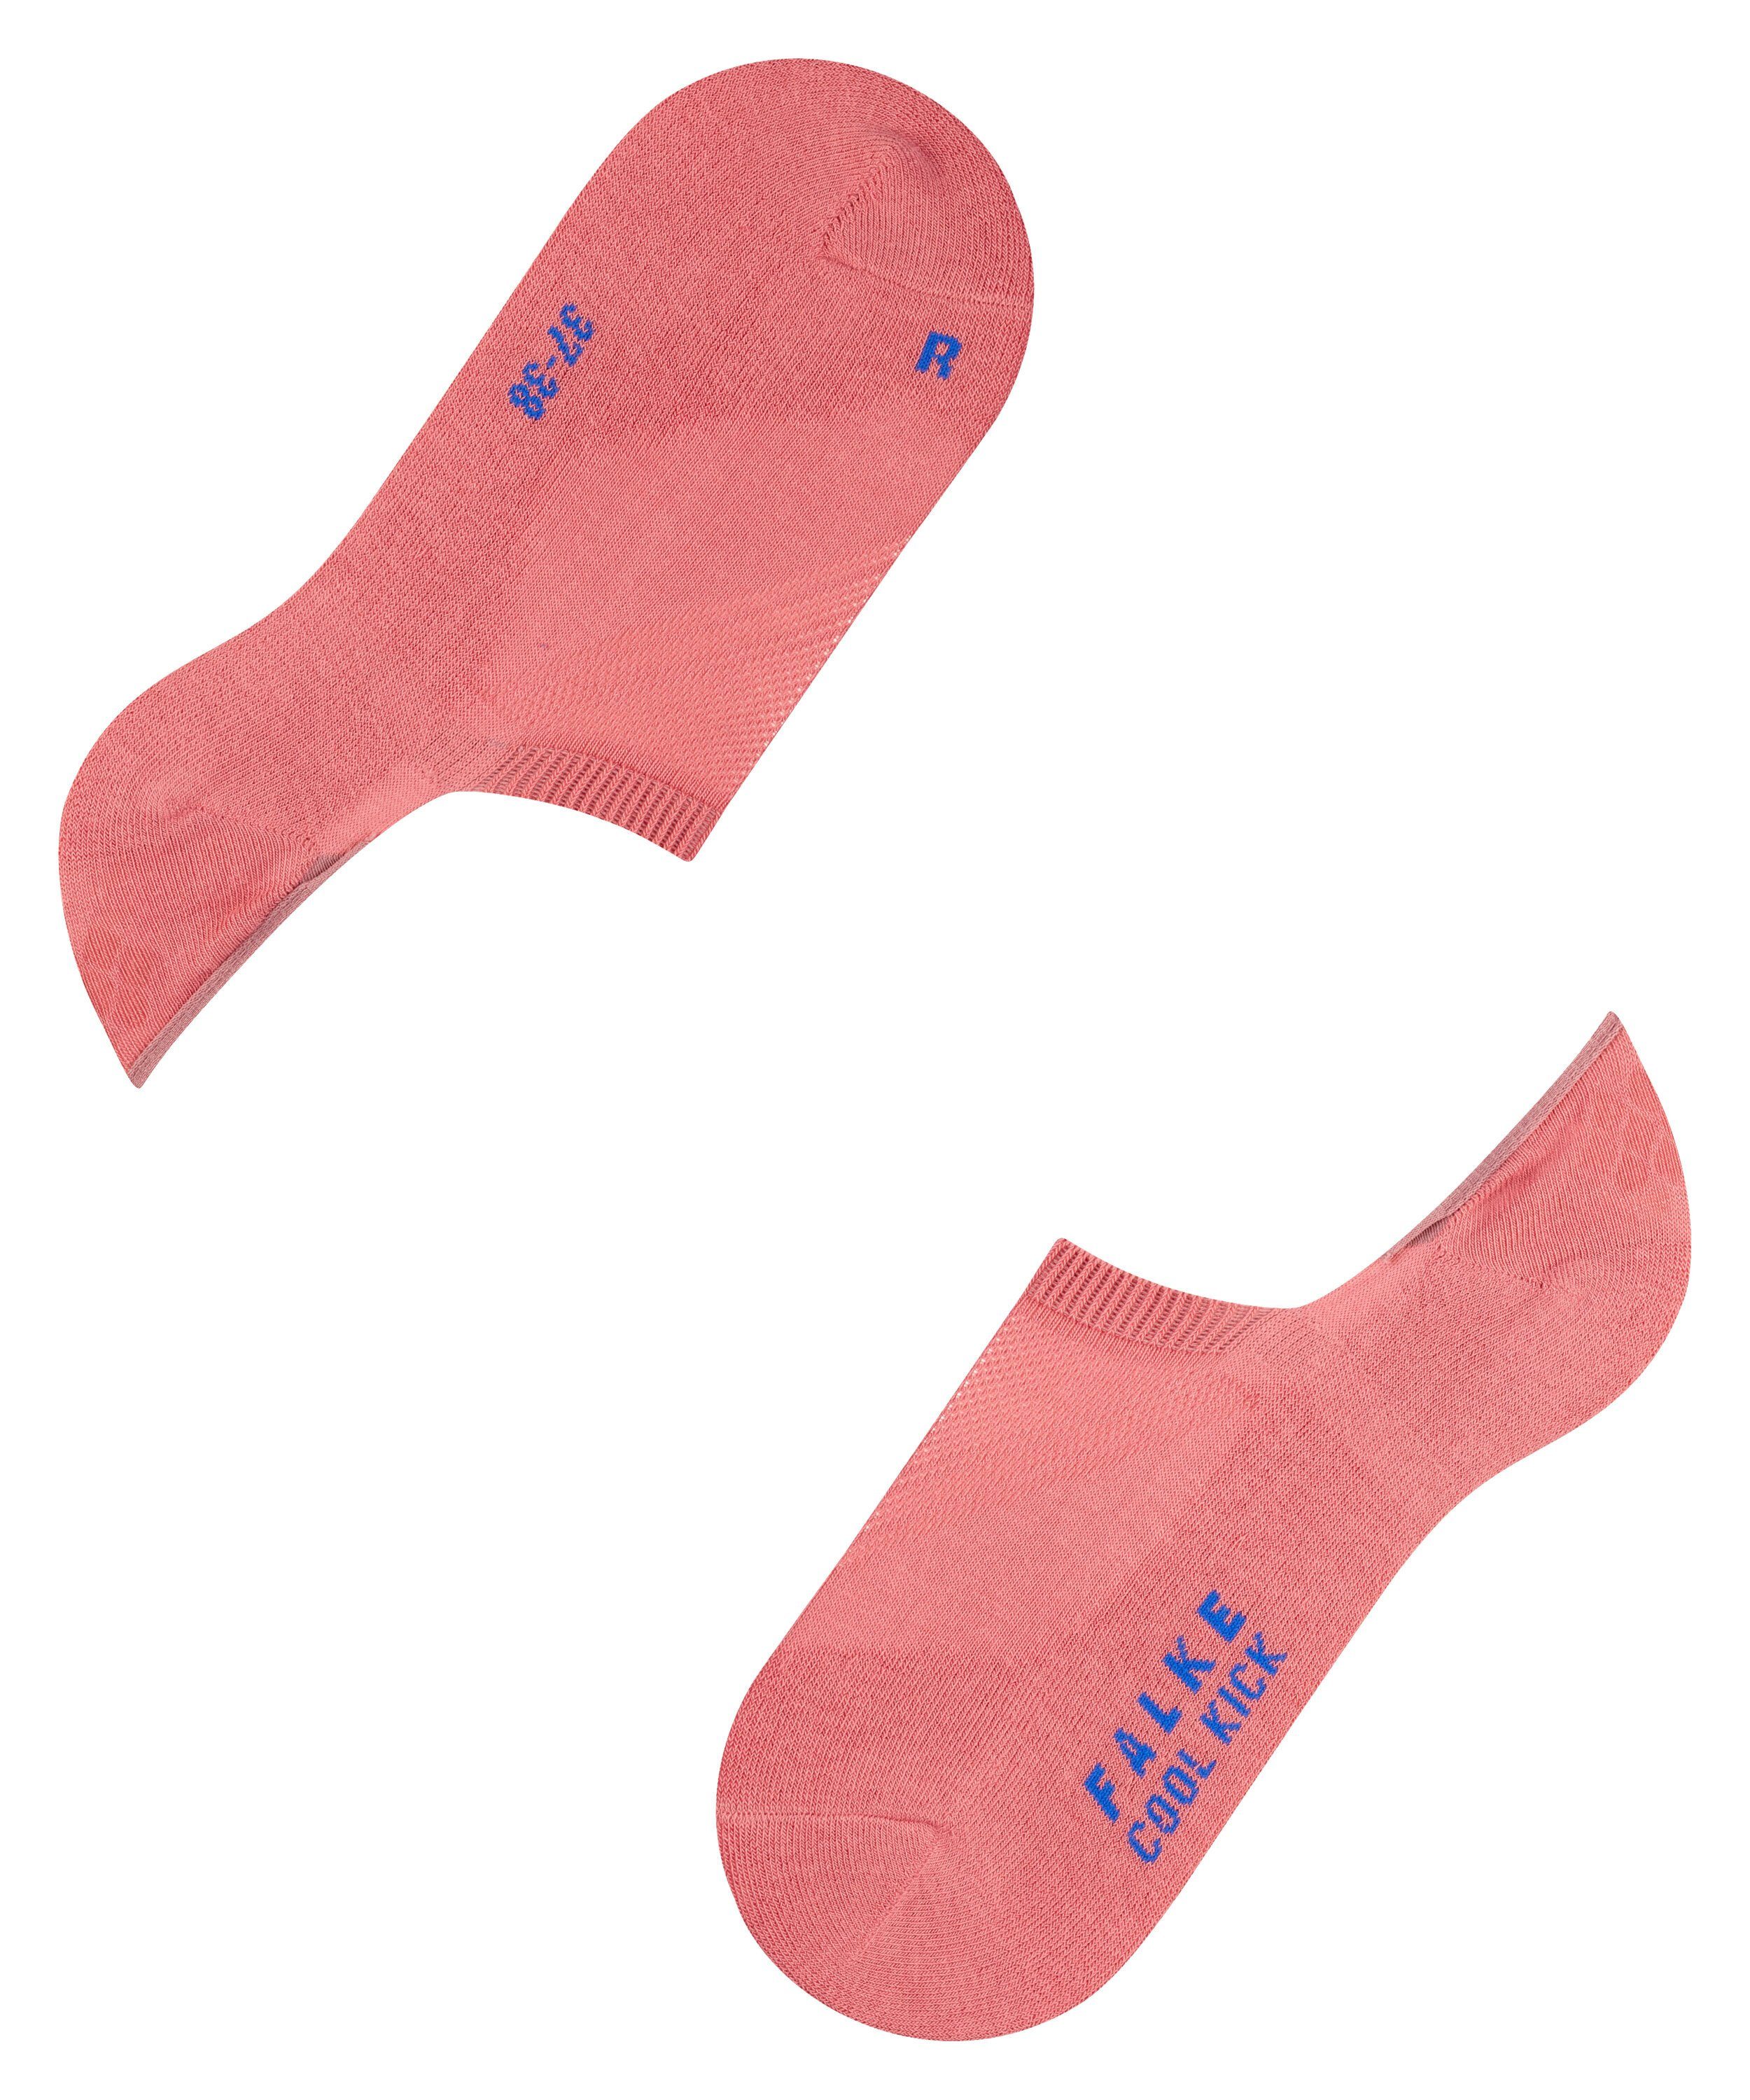 (8684) Cool Ferse Kick Silikon durch Füßlinge in pink rutschfest der FALKE powder